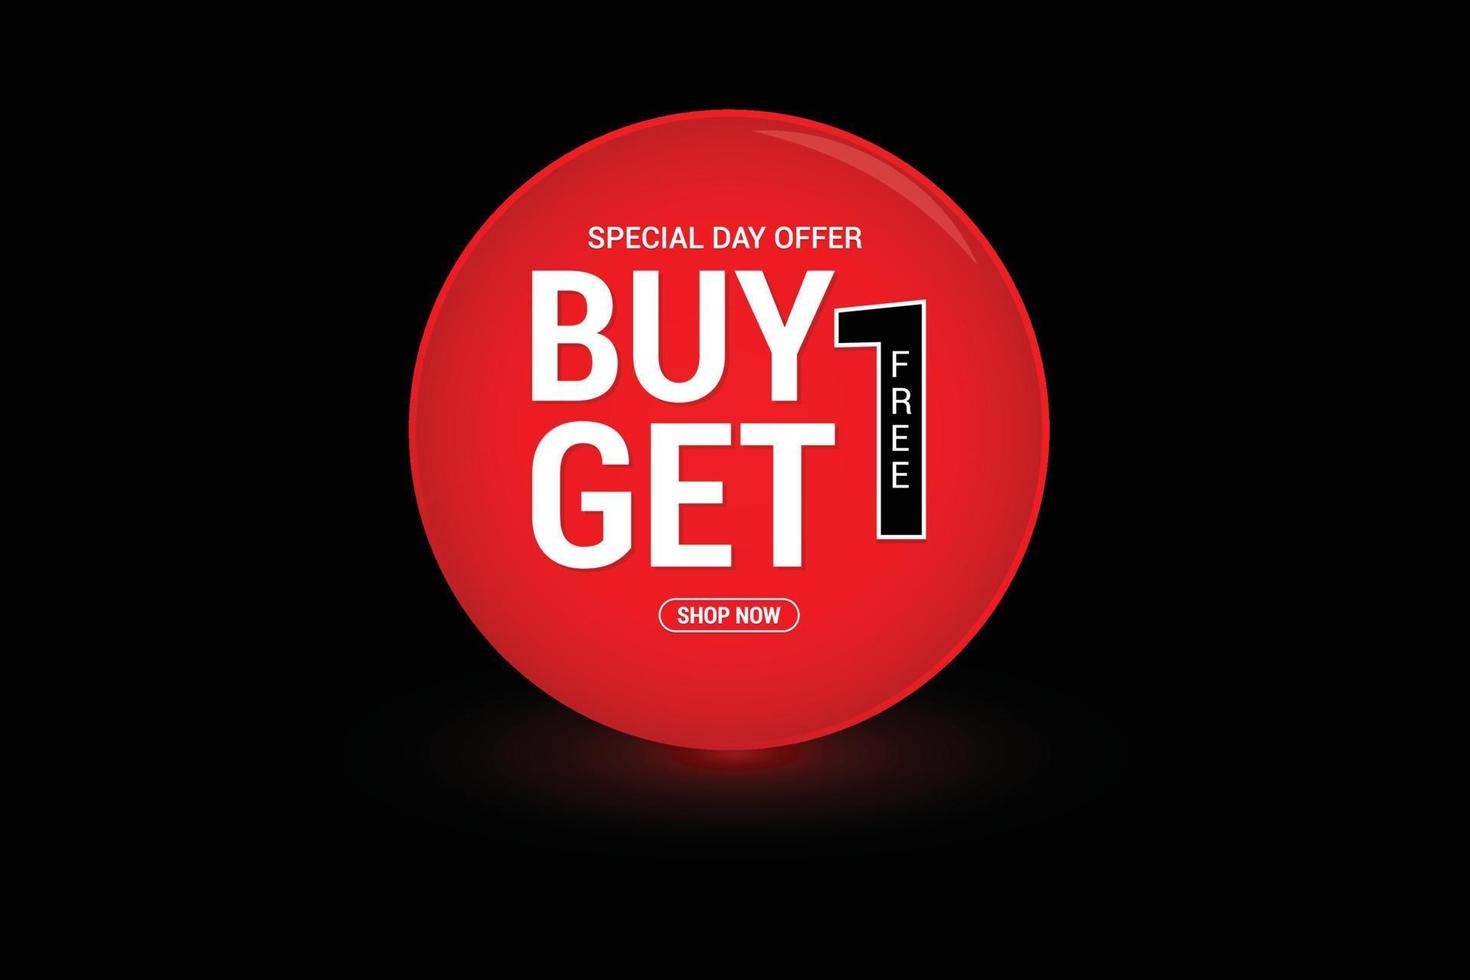 compre 1 y obtenga 1 oferta especial de día gratis diseño brillante de iluminación vectorial en círculo rojo. vector